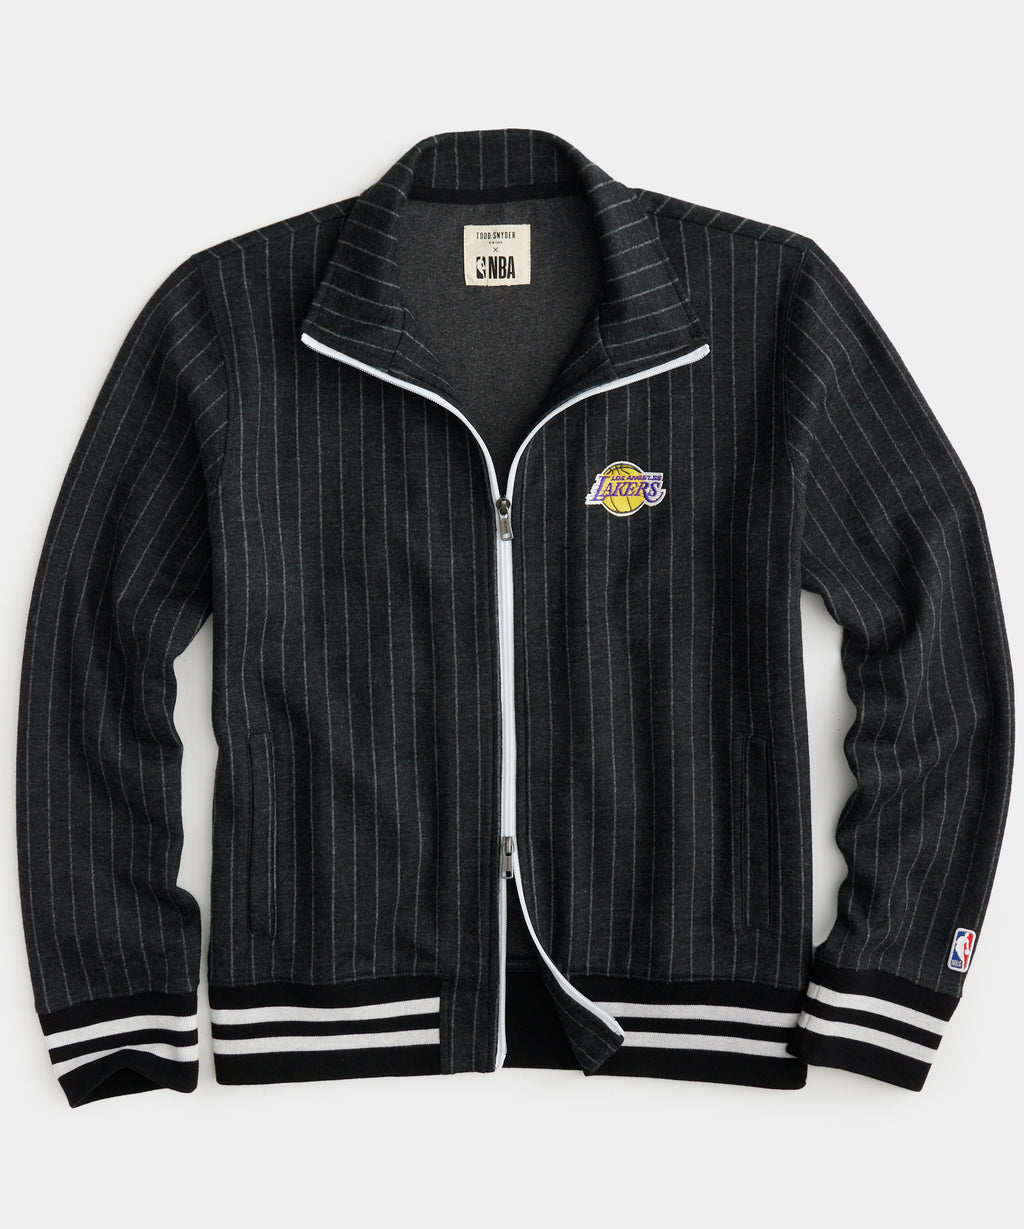 NBA, Jackets & Coats, Warriors Warm Up Jacket